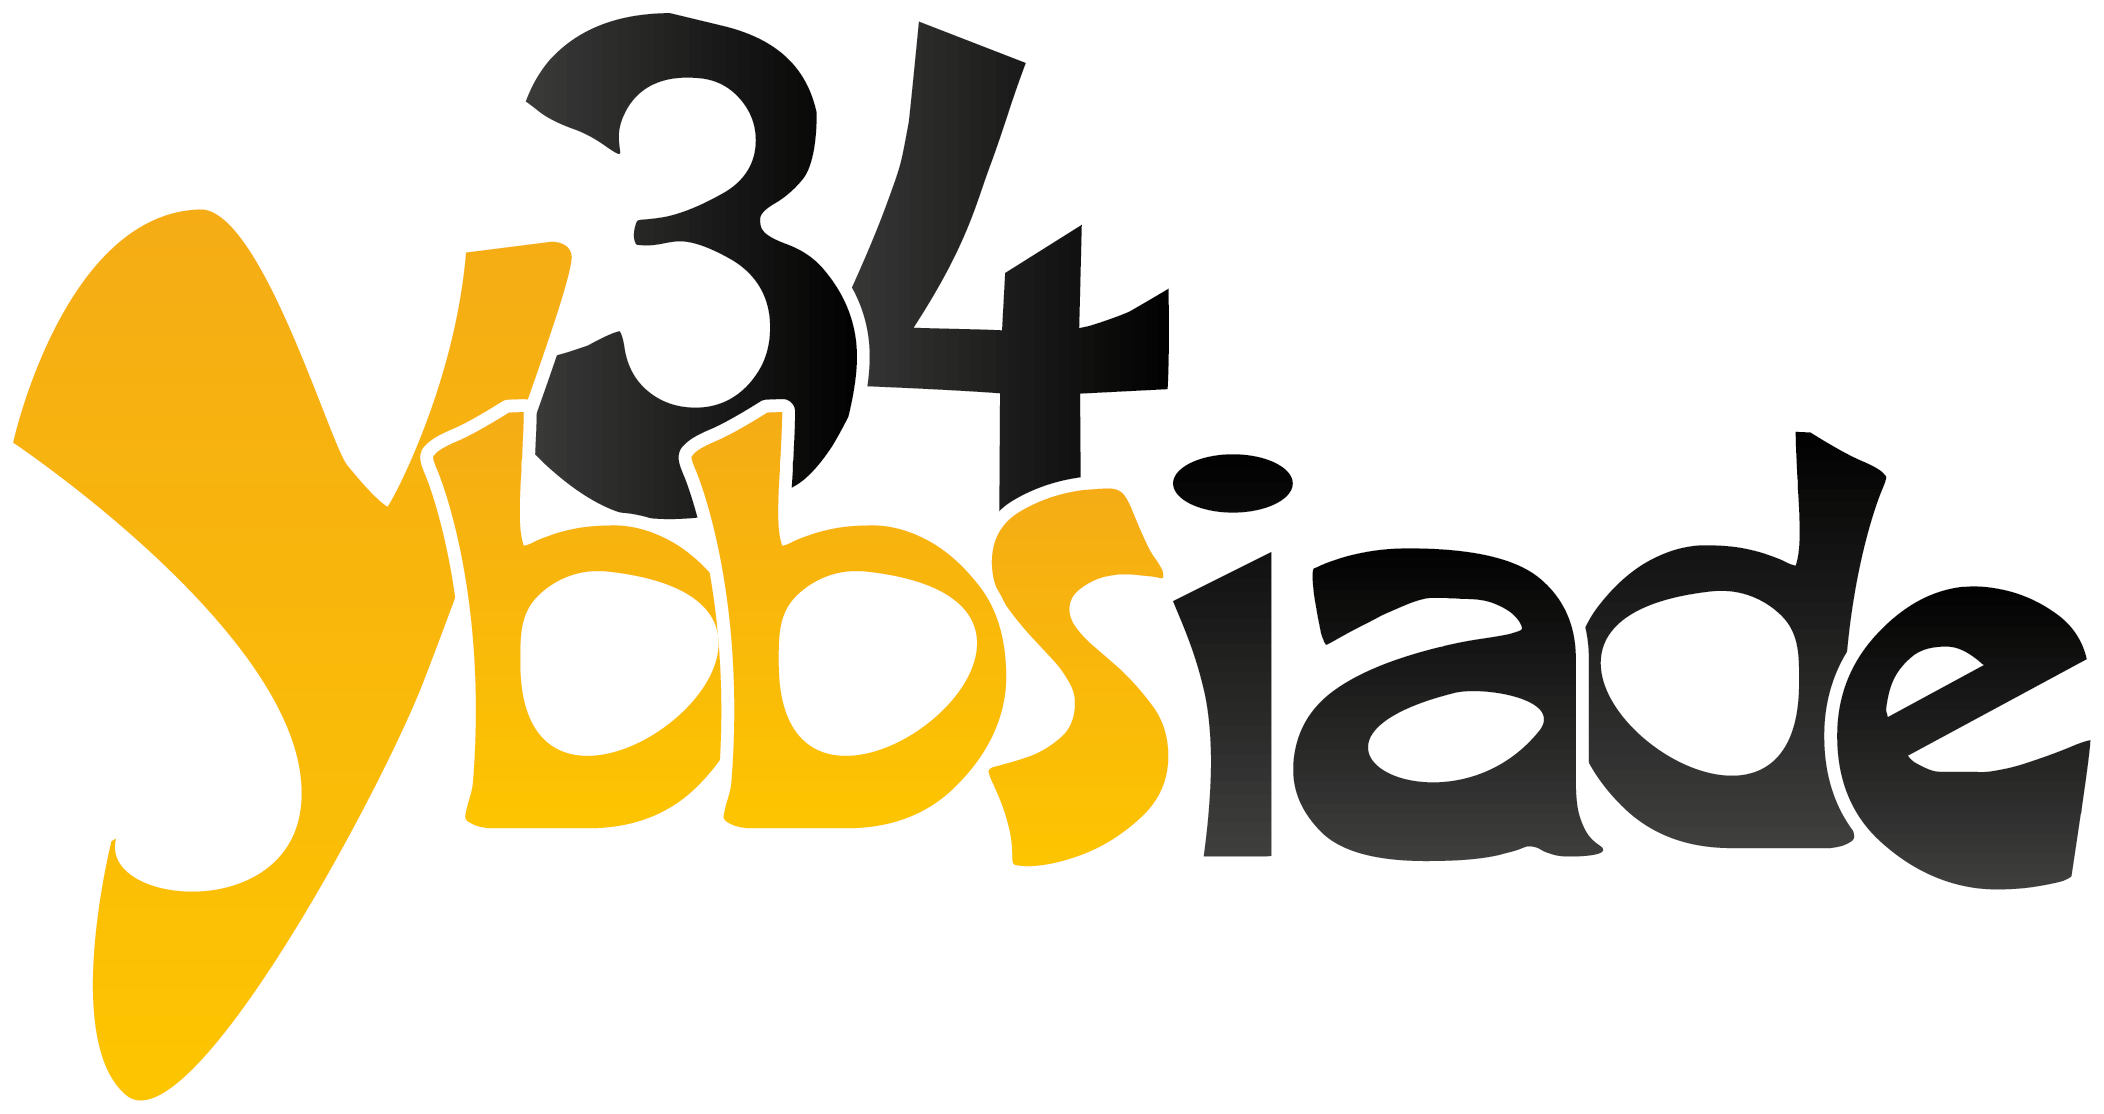 Logo der 34. Ybbsiade in Ybbs an der Donau